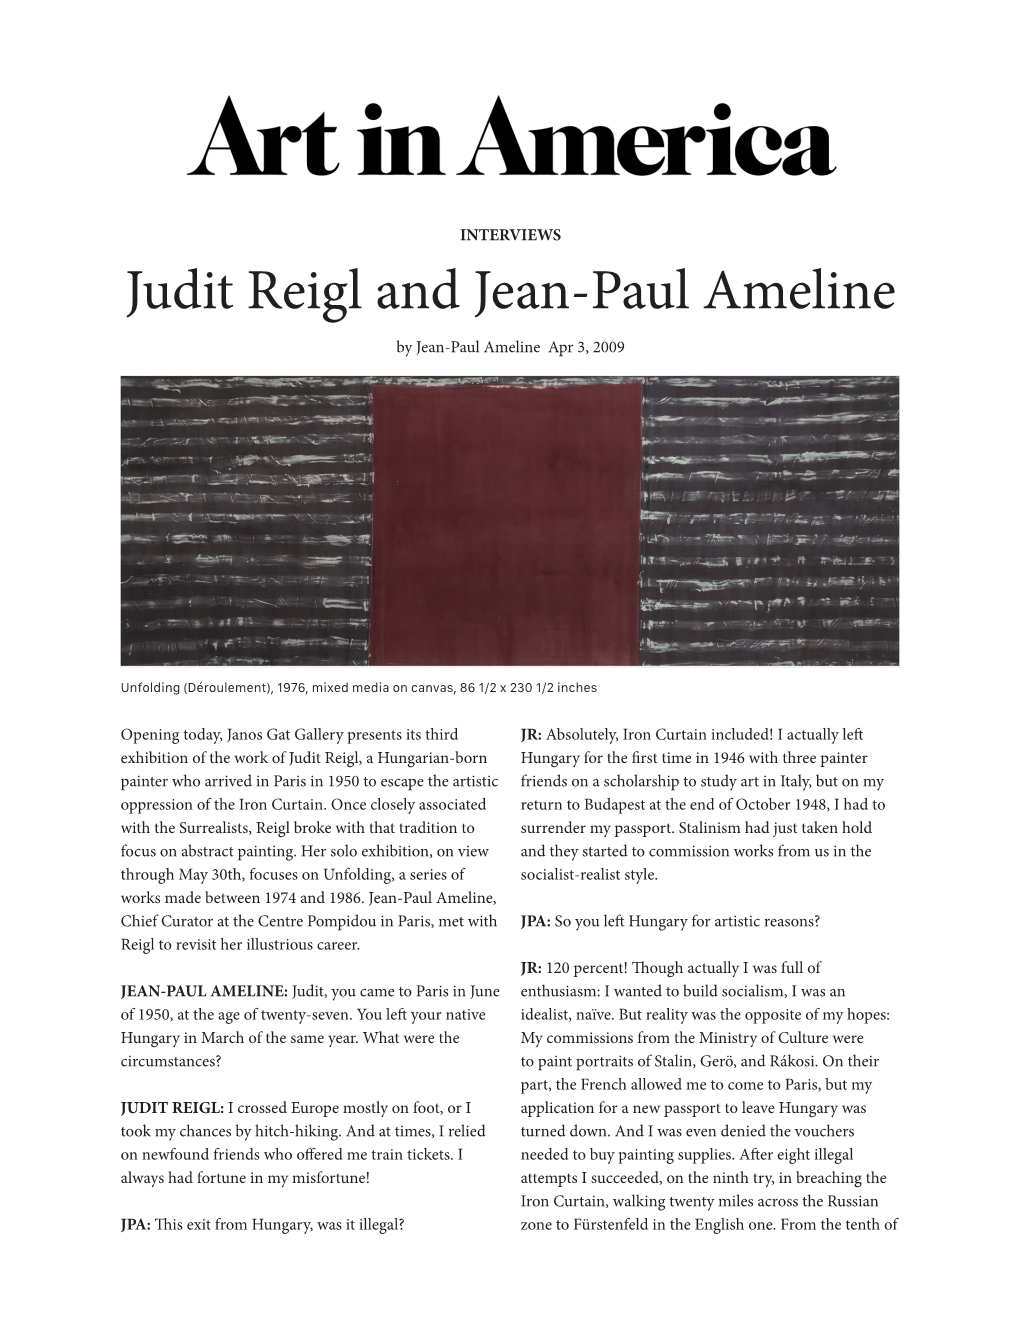 Judit Reigl and Jean-Paul Ameline by Jean-Paul Ameline Apr 3, 2009